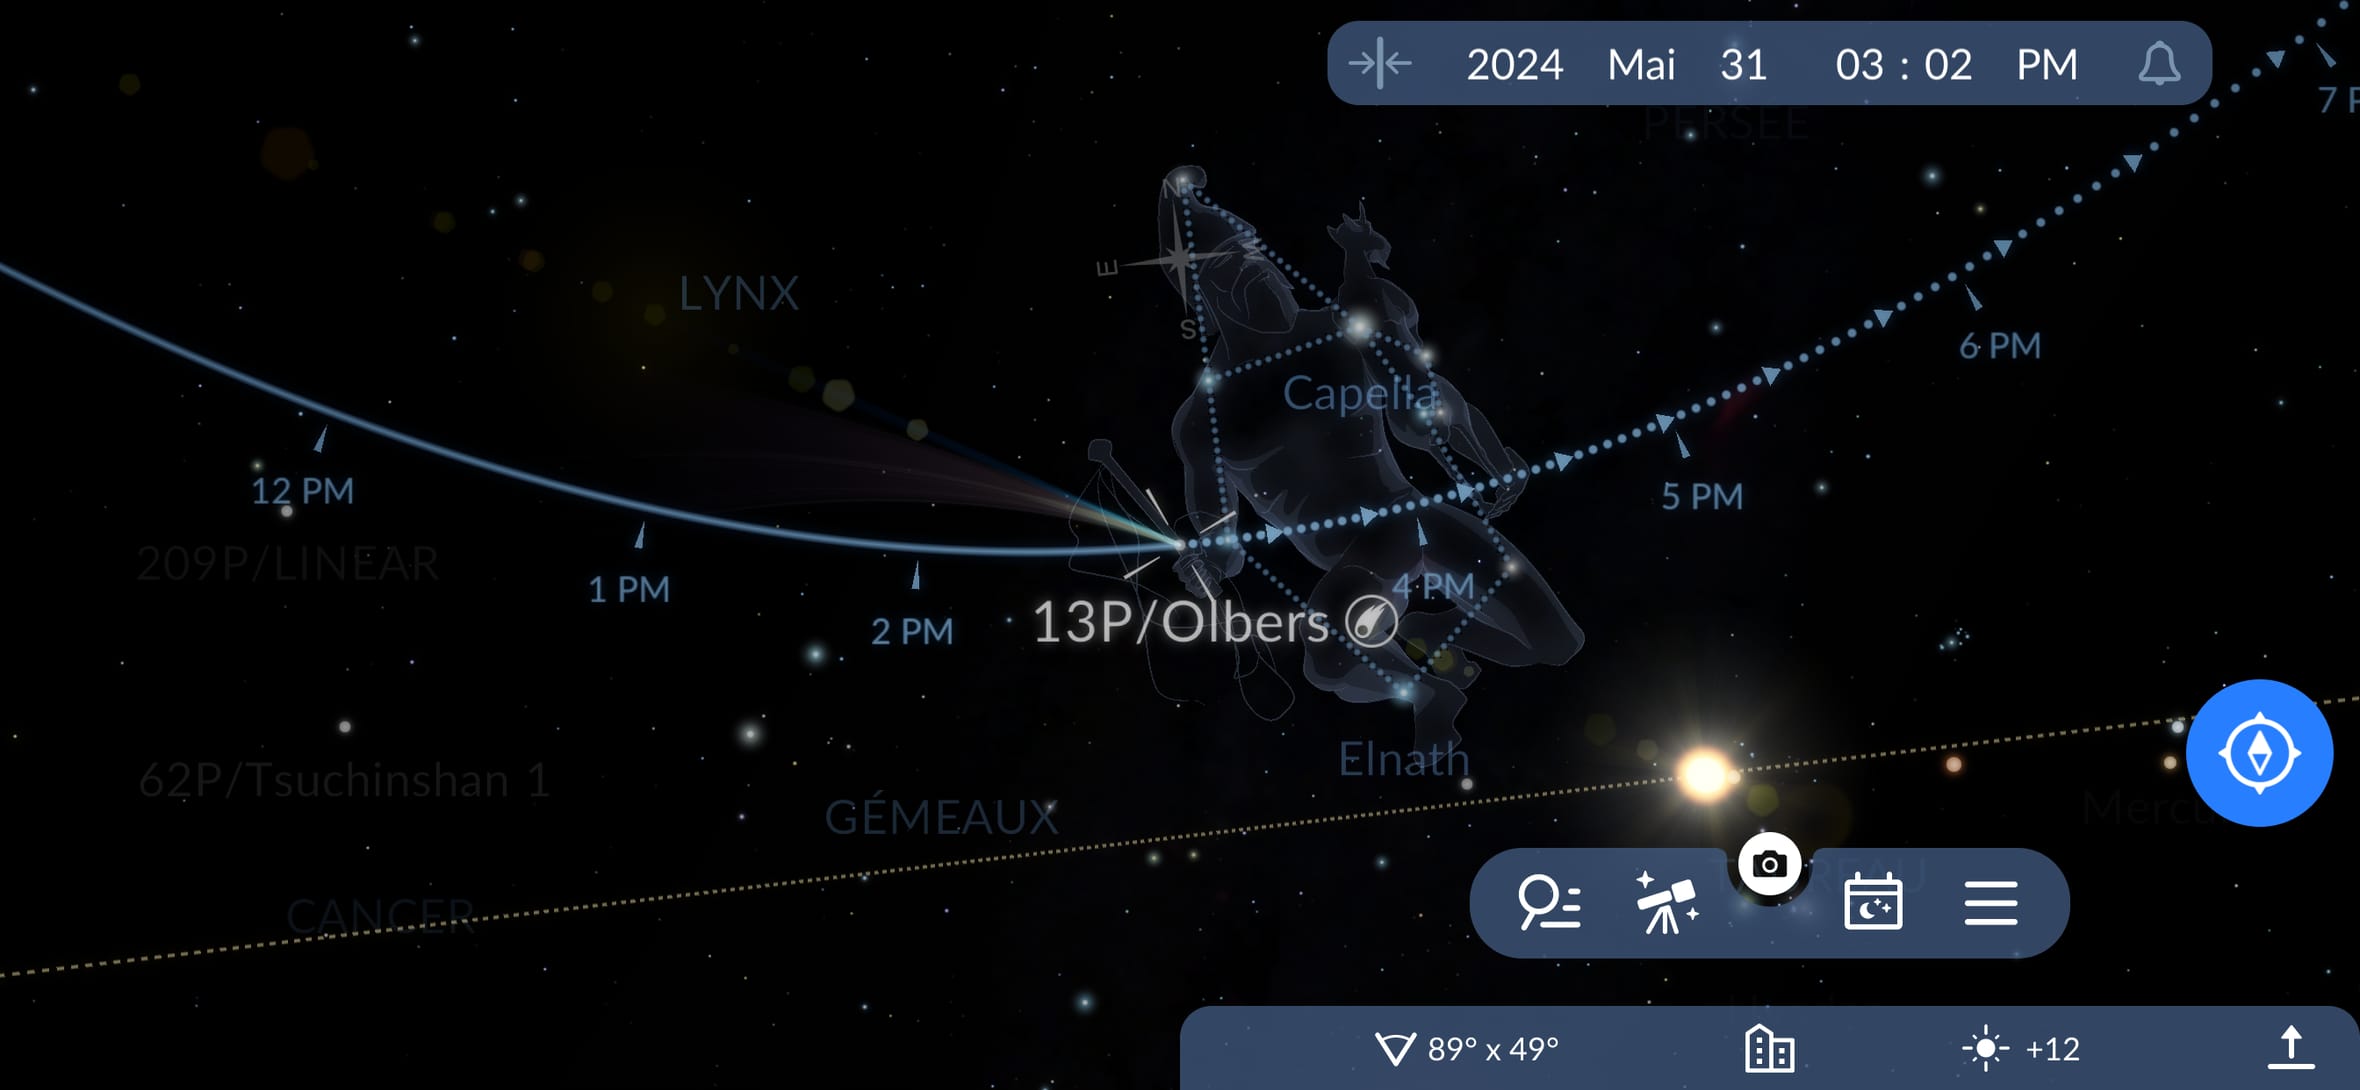 Comment trouver la comète Olbers dans le ciel